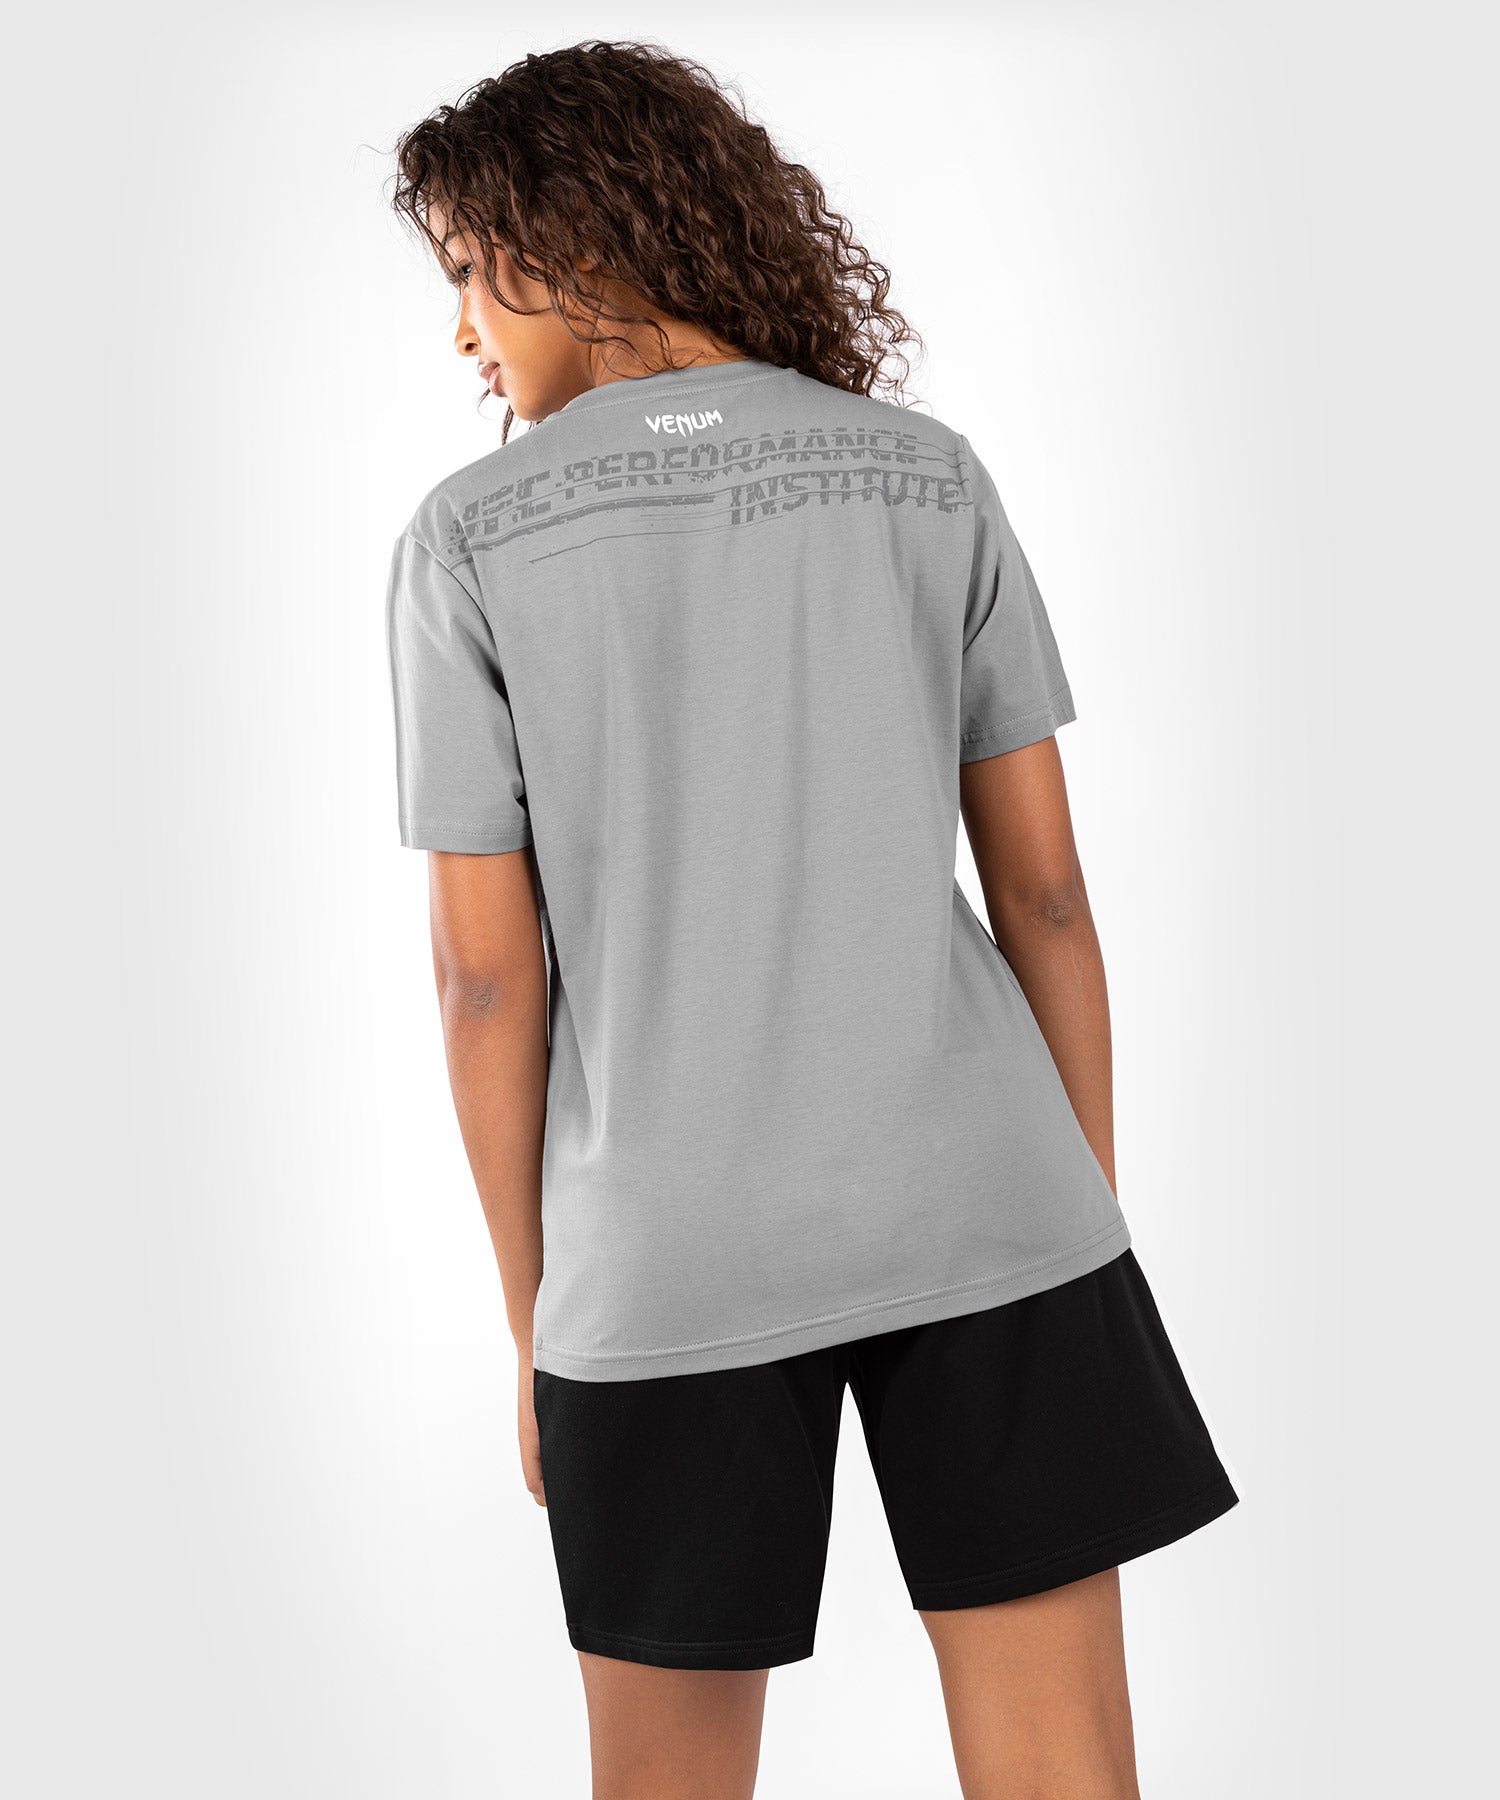 T-Shirt En Coton & Crop Top Venum Femme